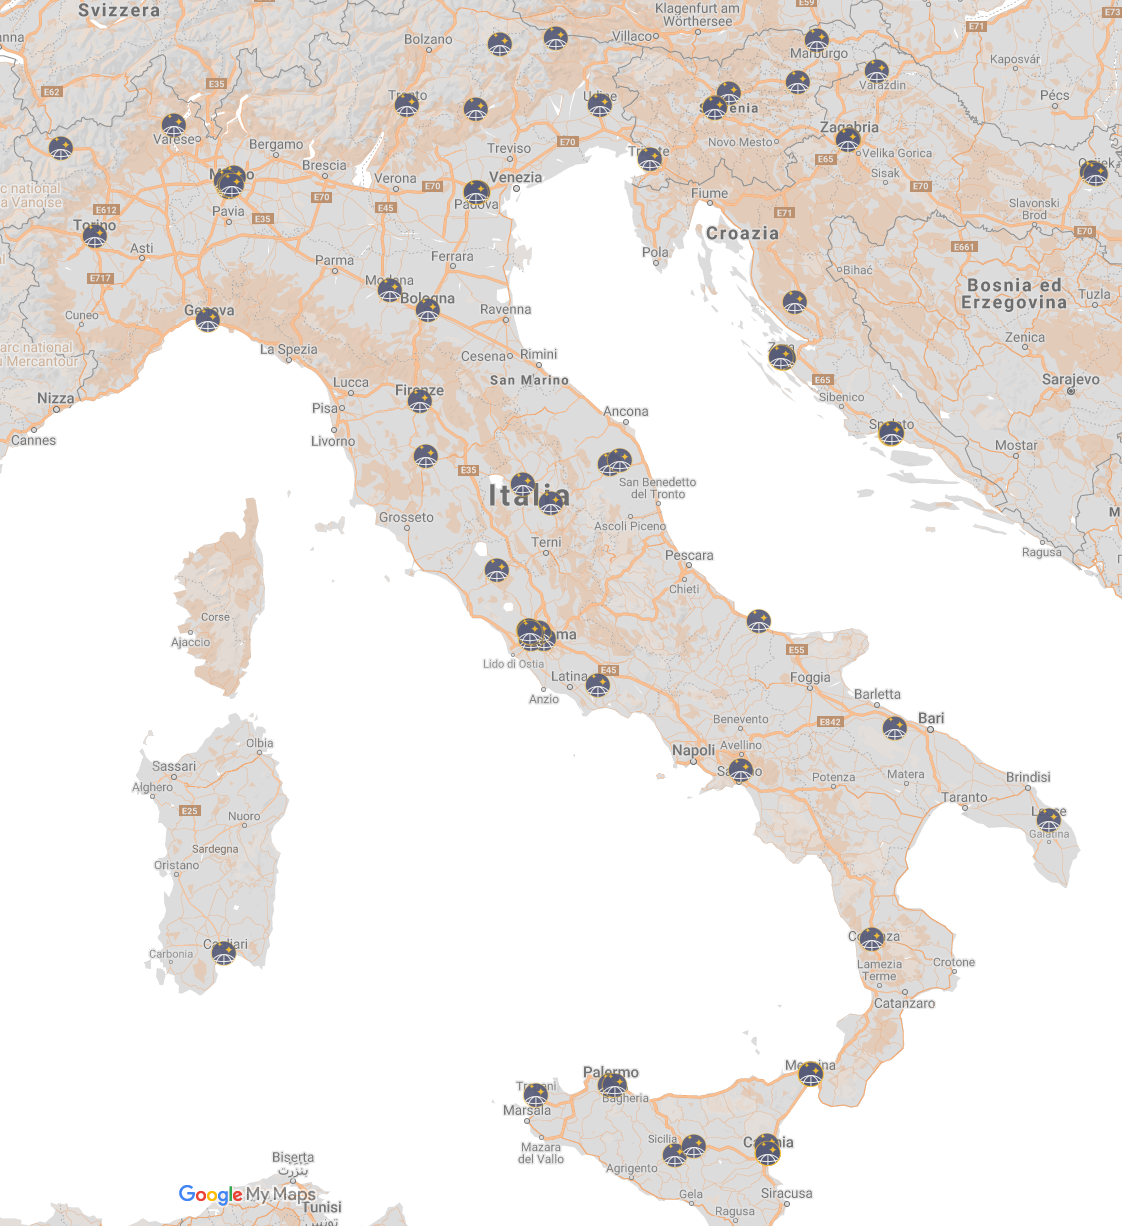 Eventi italiani nell'ambito della Notte internazionale della Geografia - GeoNight 2021: 9 aprile